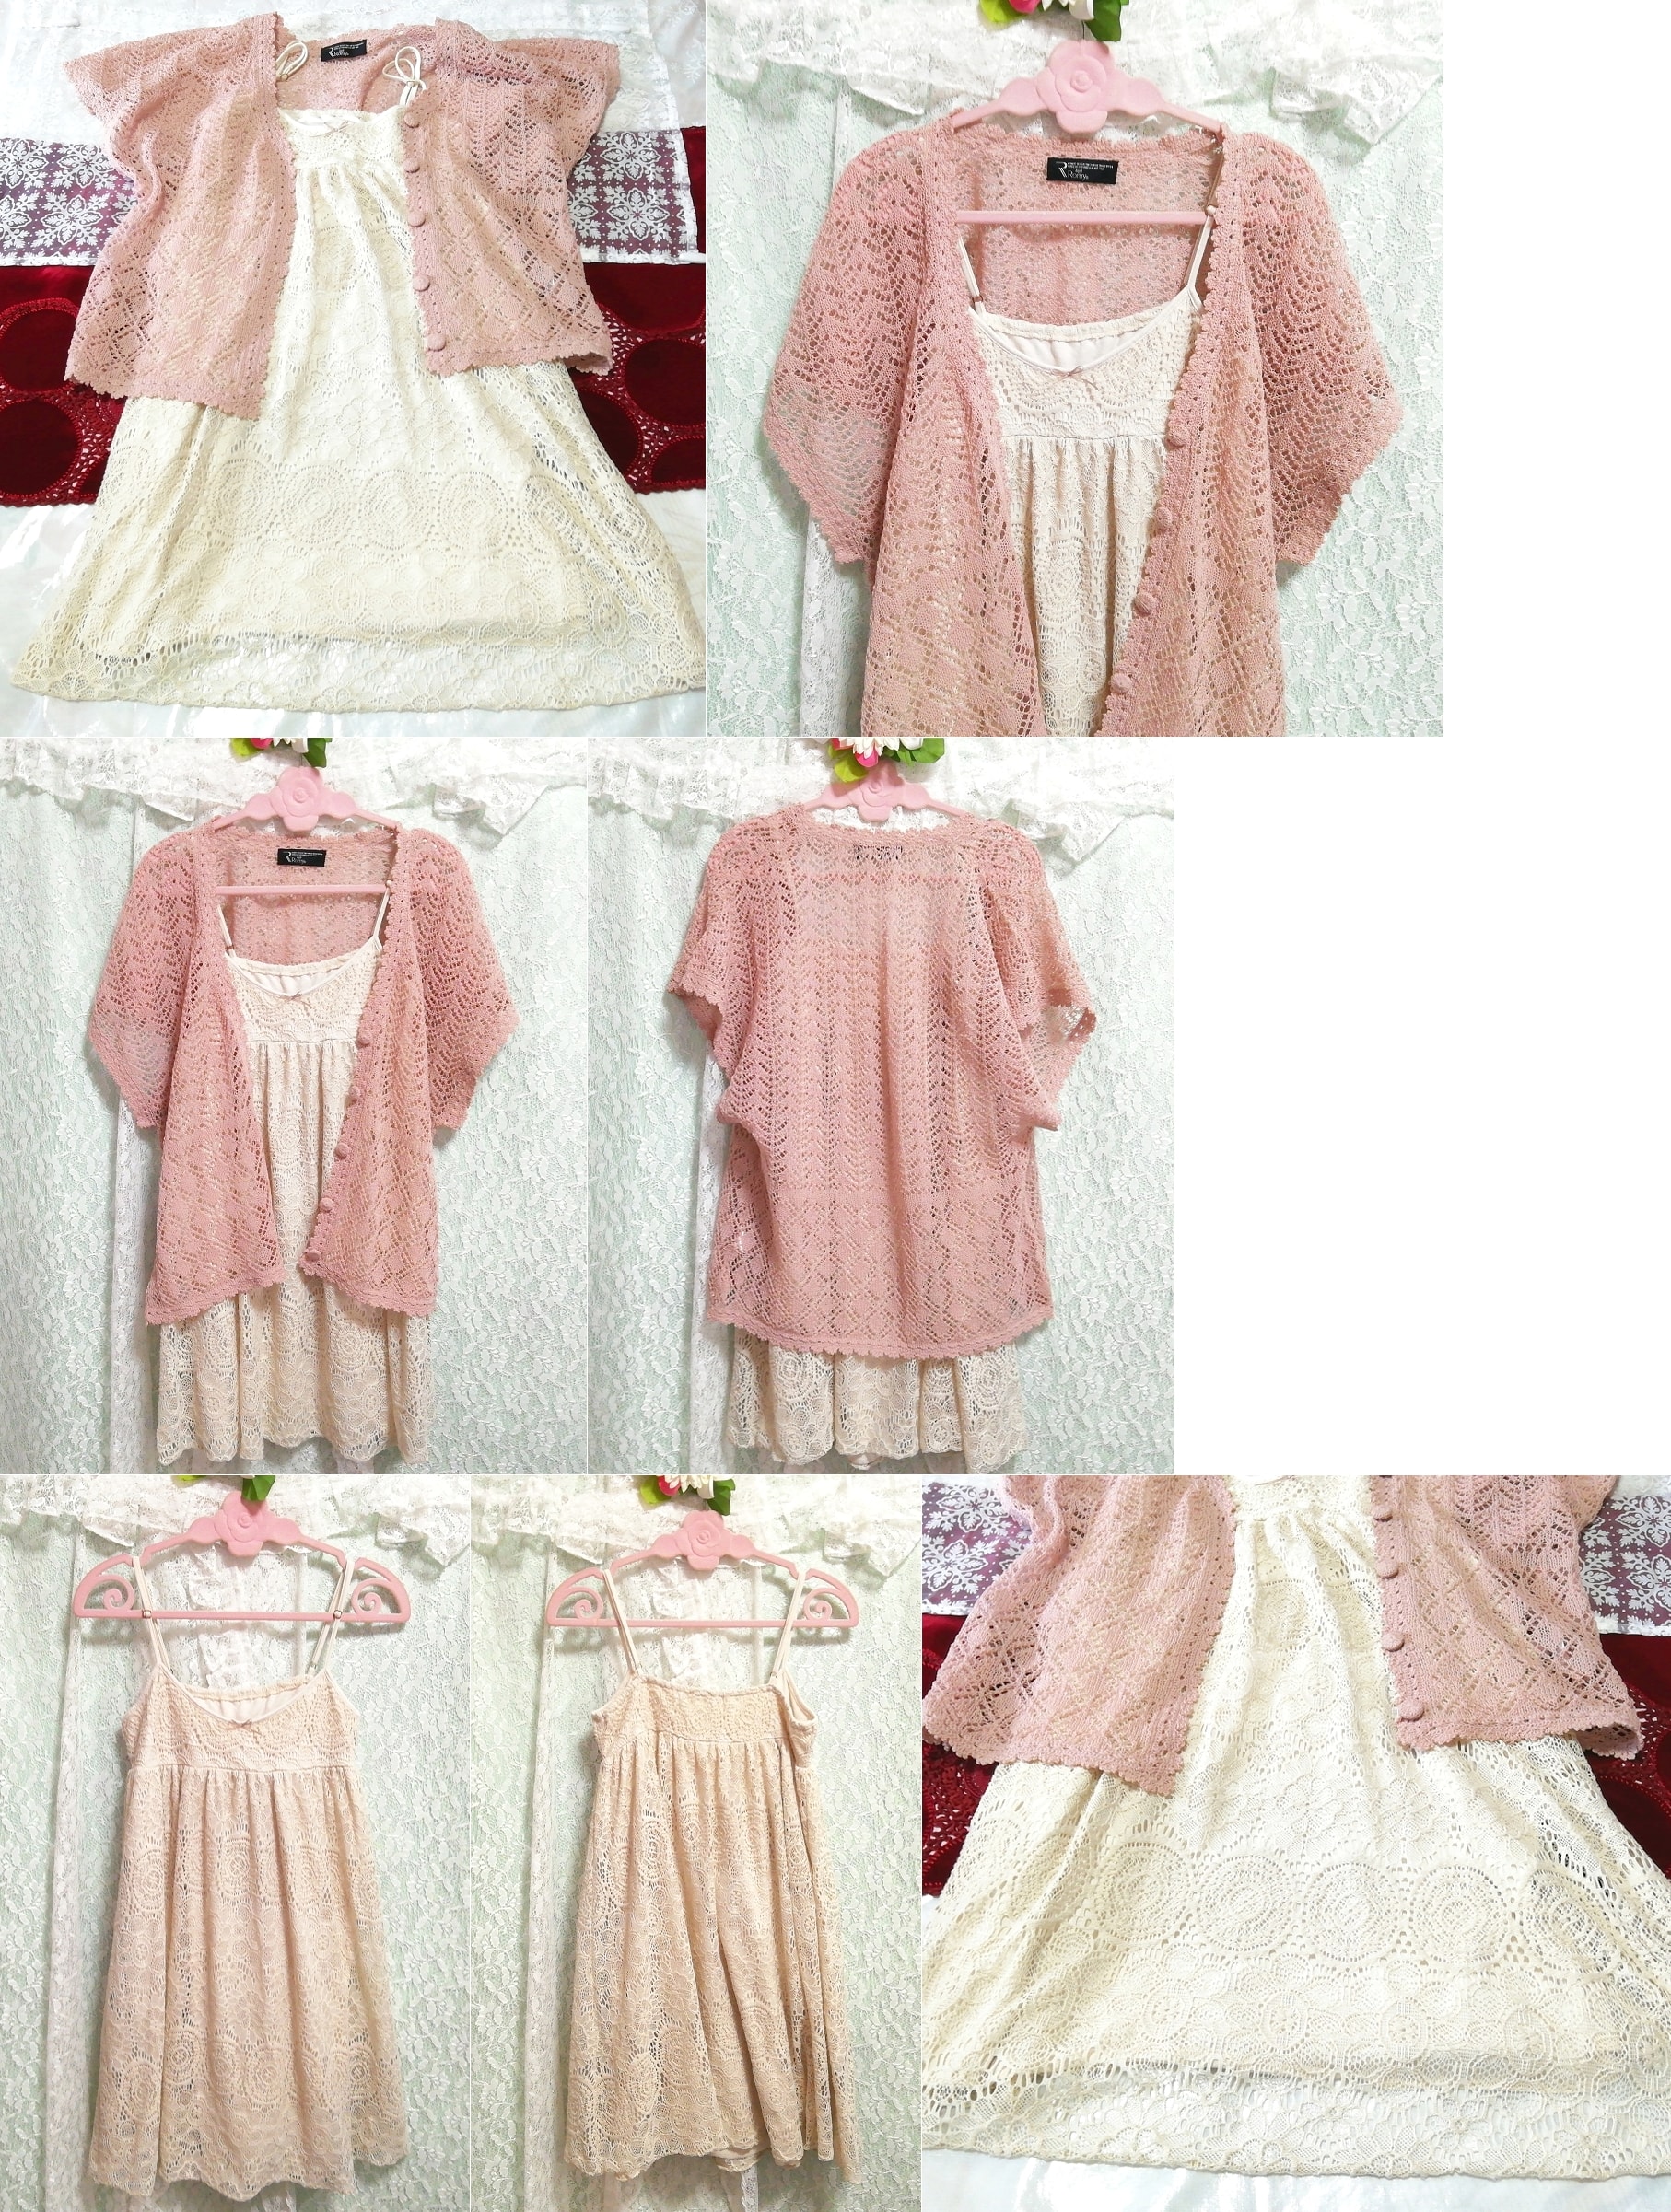 粉色针织蕾丝罩衫睡衣吊带背心娃娃装连衣裙 2 件, 时尚, 女士时装, 睡衣